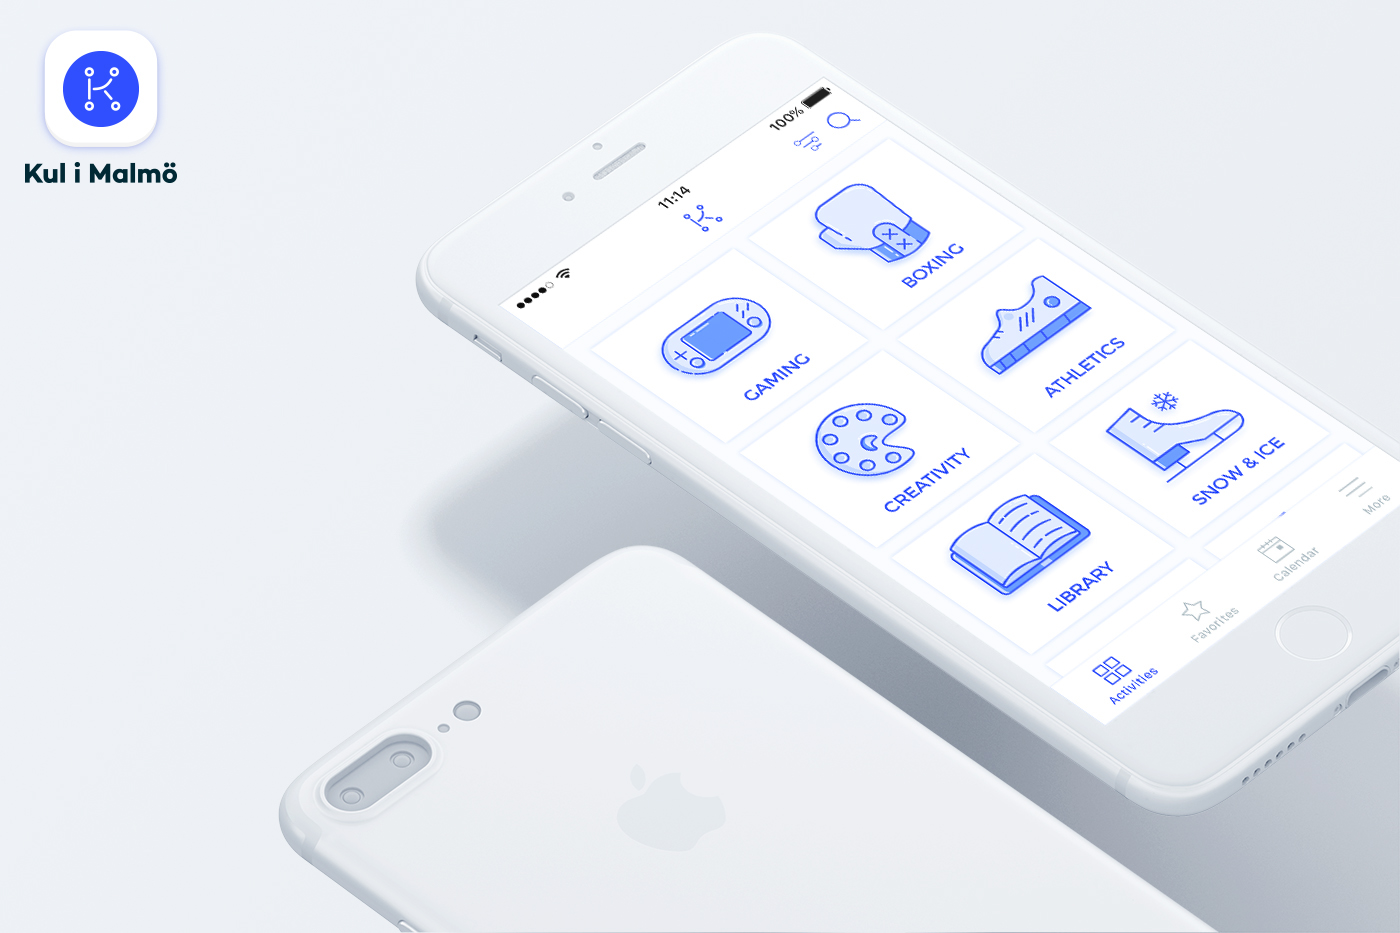 Malmö redesign kulimalmö Eventfinder app UI ux mobile